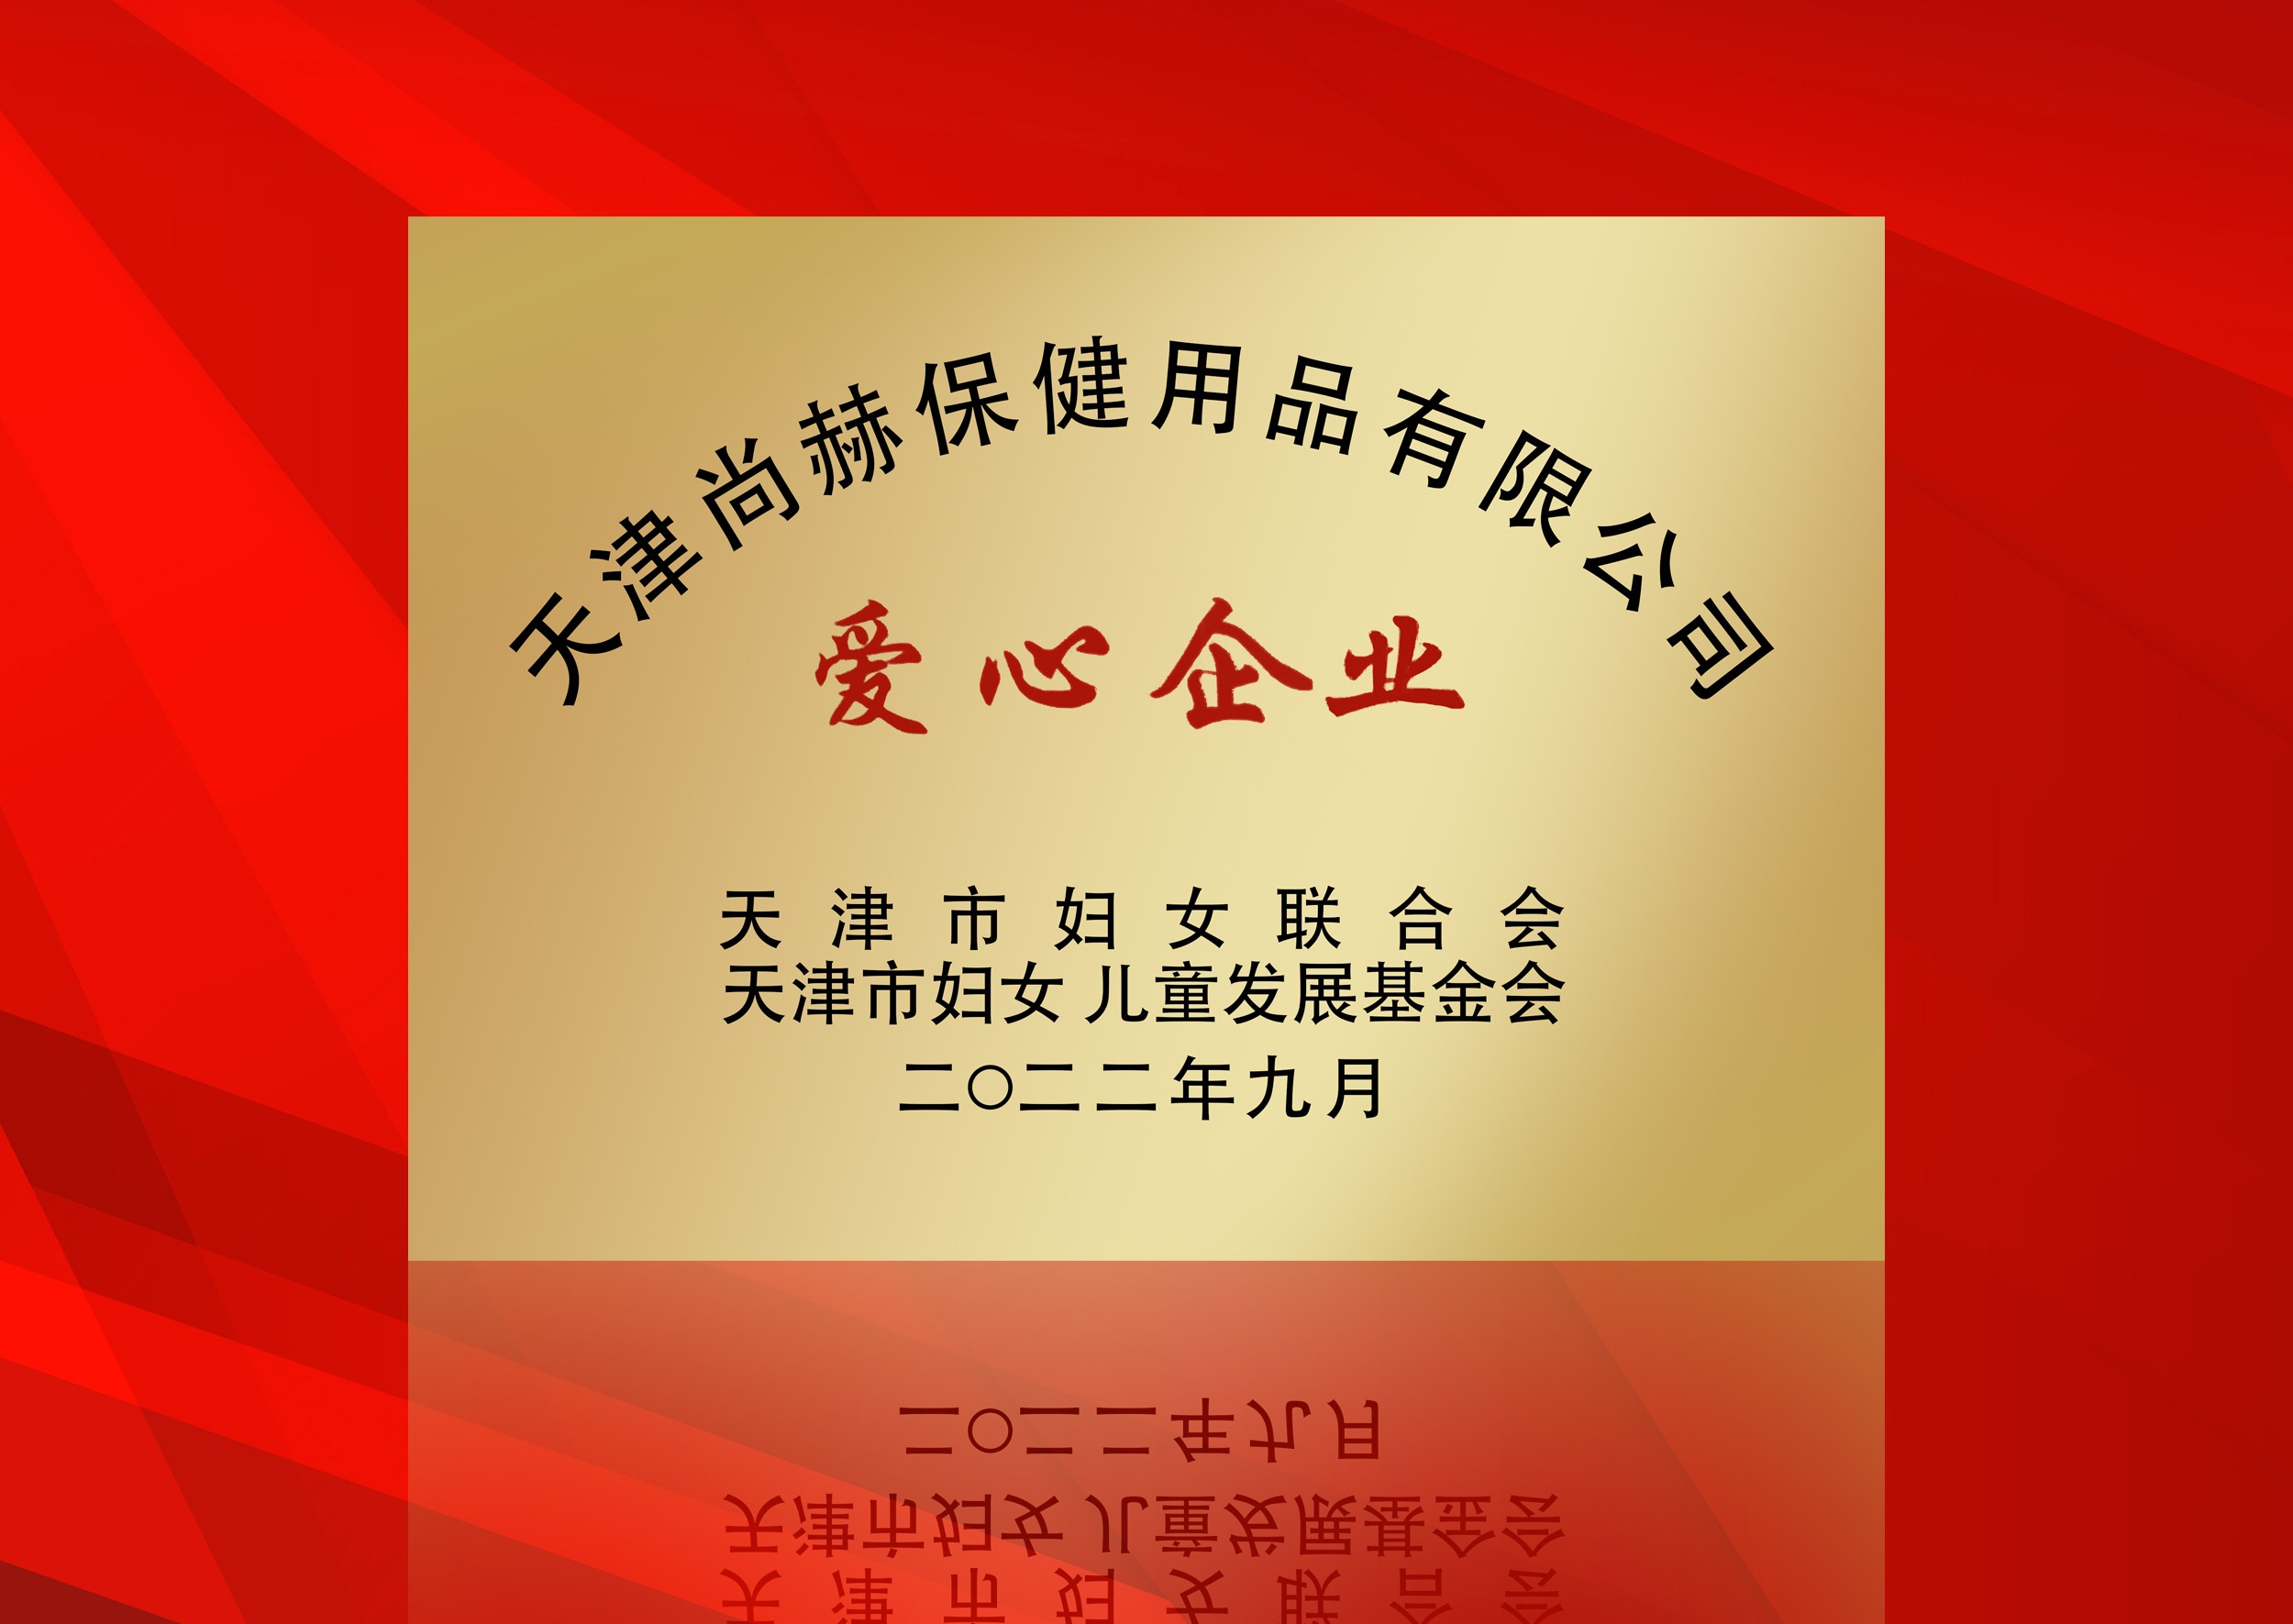 2022年9月-皇家体育(中国)有限责任公司公司荣获-天津市妇女联合会-“爱心企业”称号